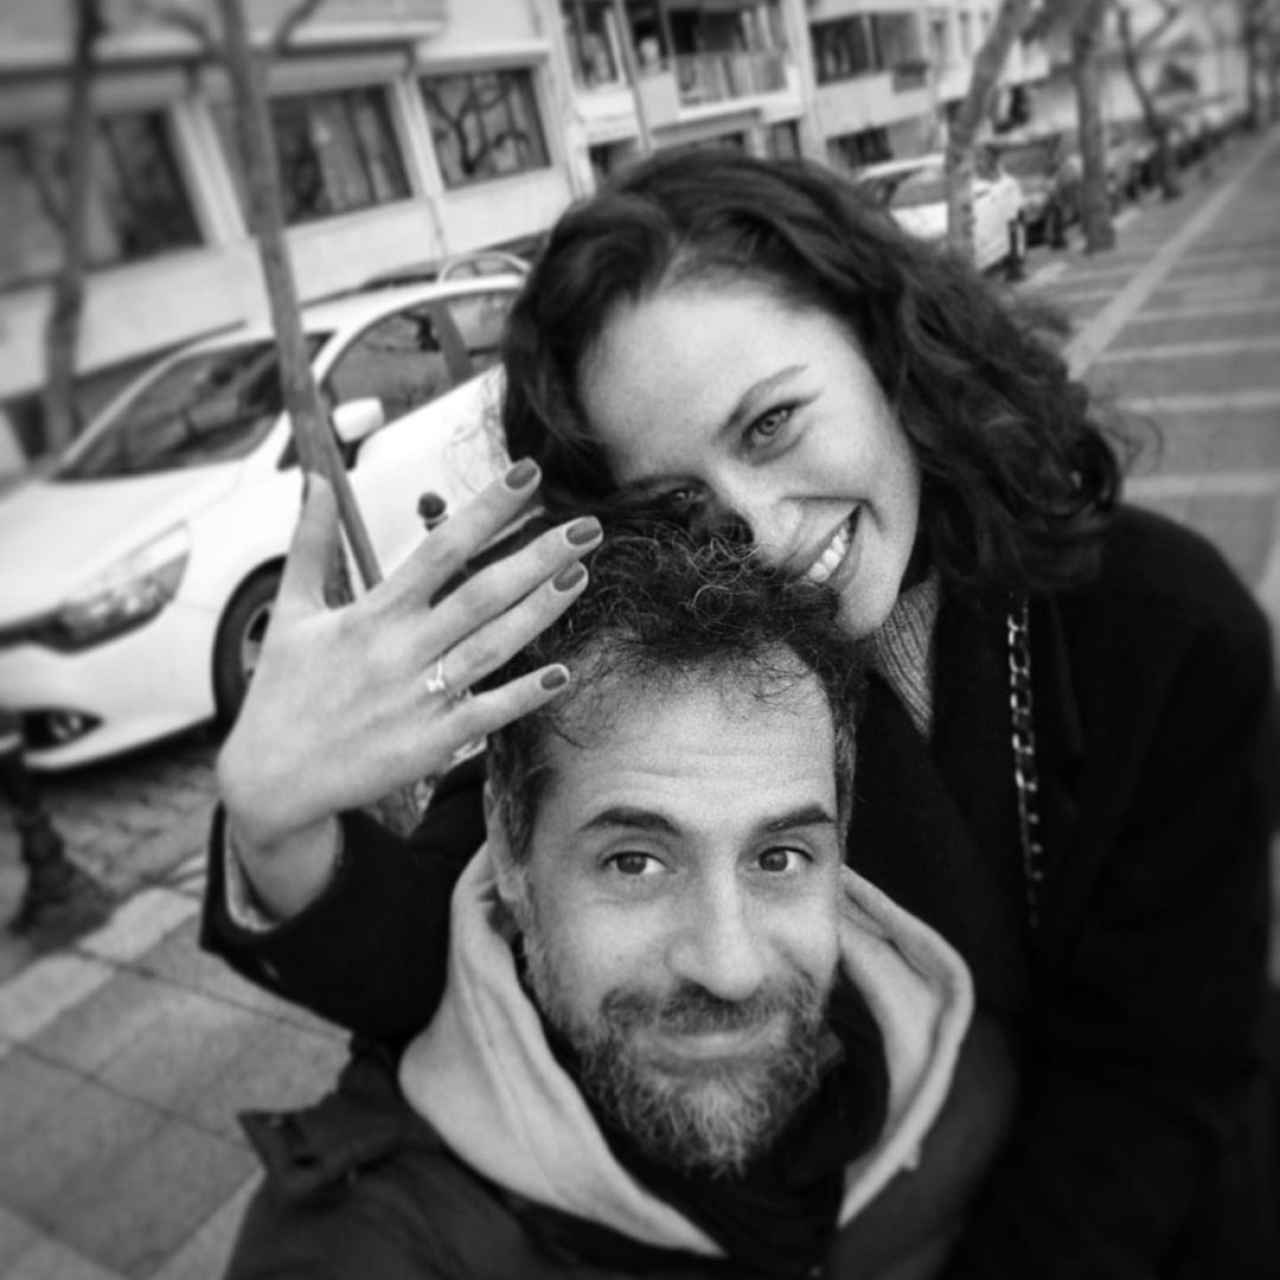 İlayda Çevik junto a su pareja en una imagen de su cuenta de Instagram.